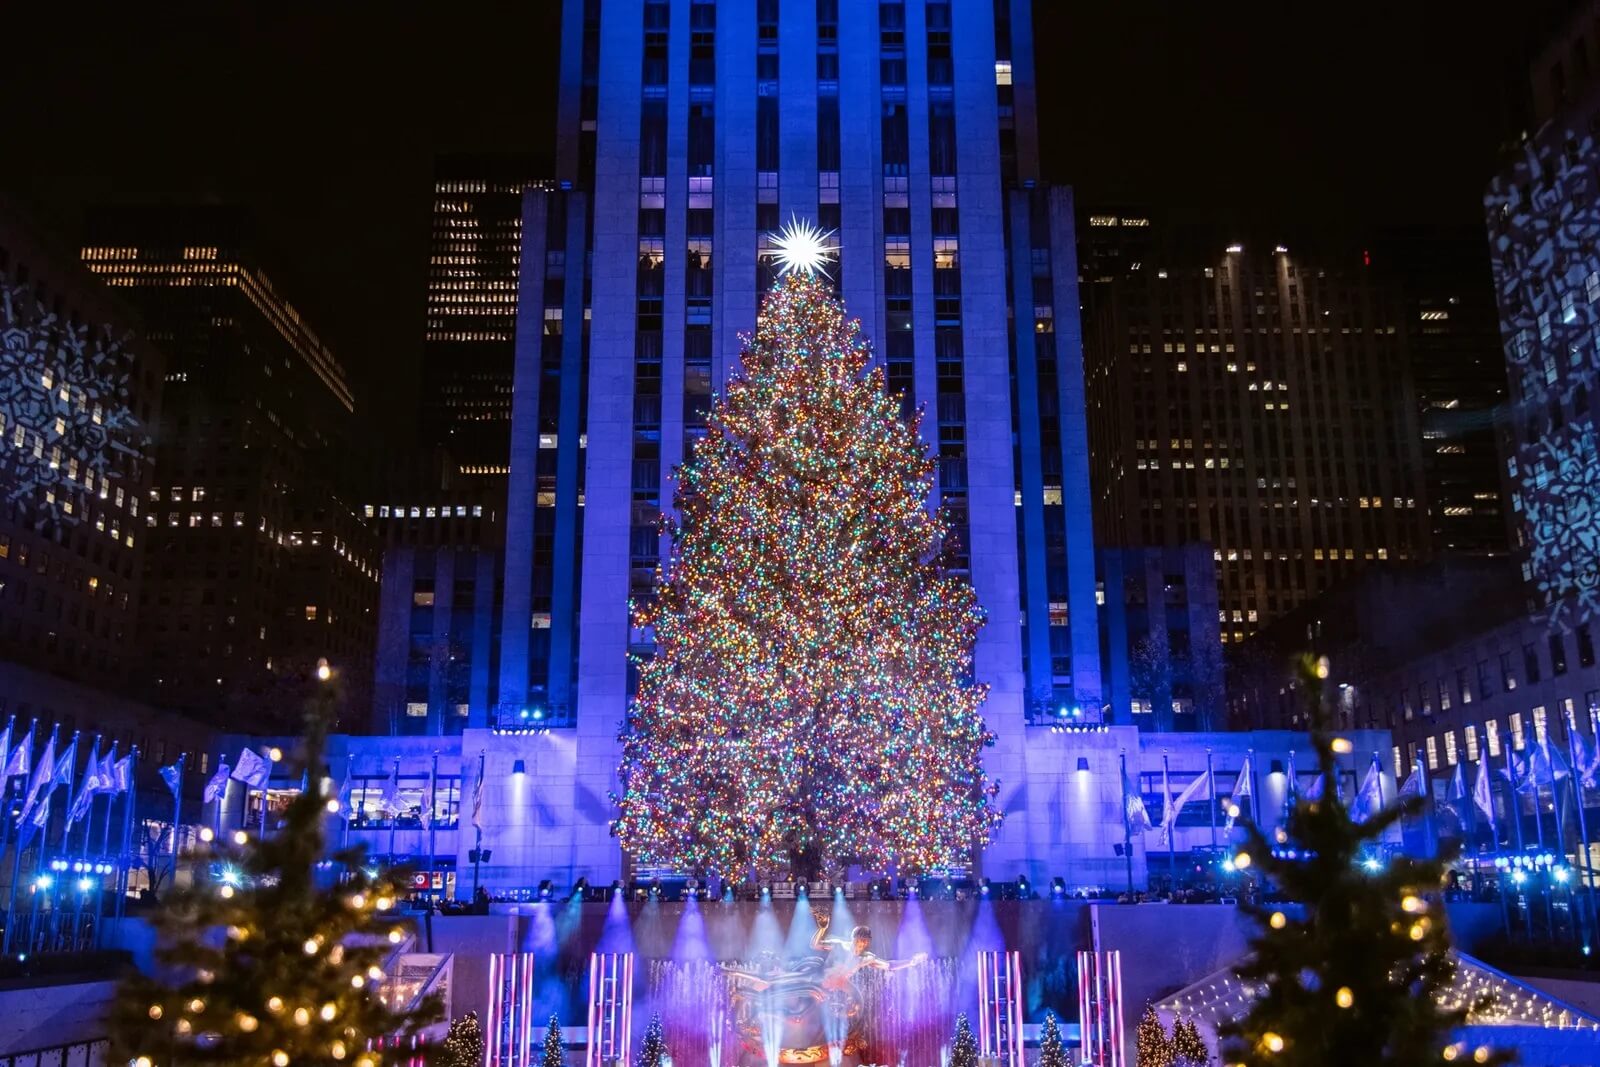 Rockefeller Center, Manhattan NY - Christmas Tree In Rockefeller Center Lit Up At Night